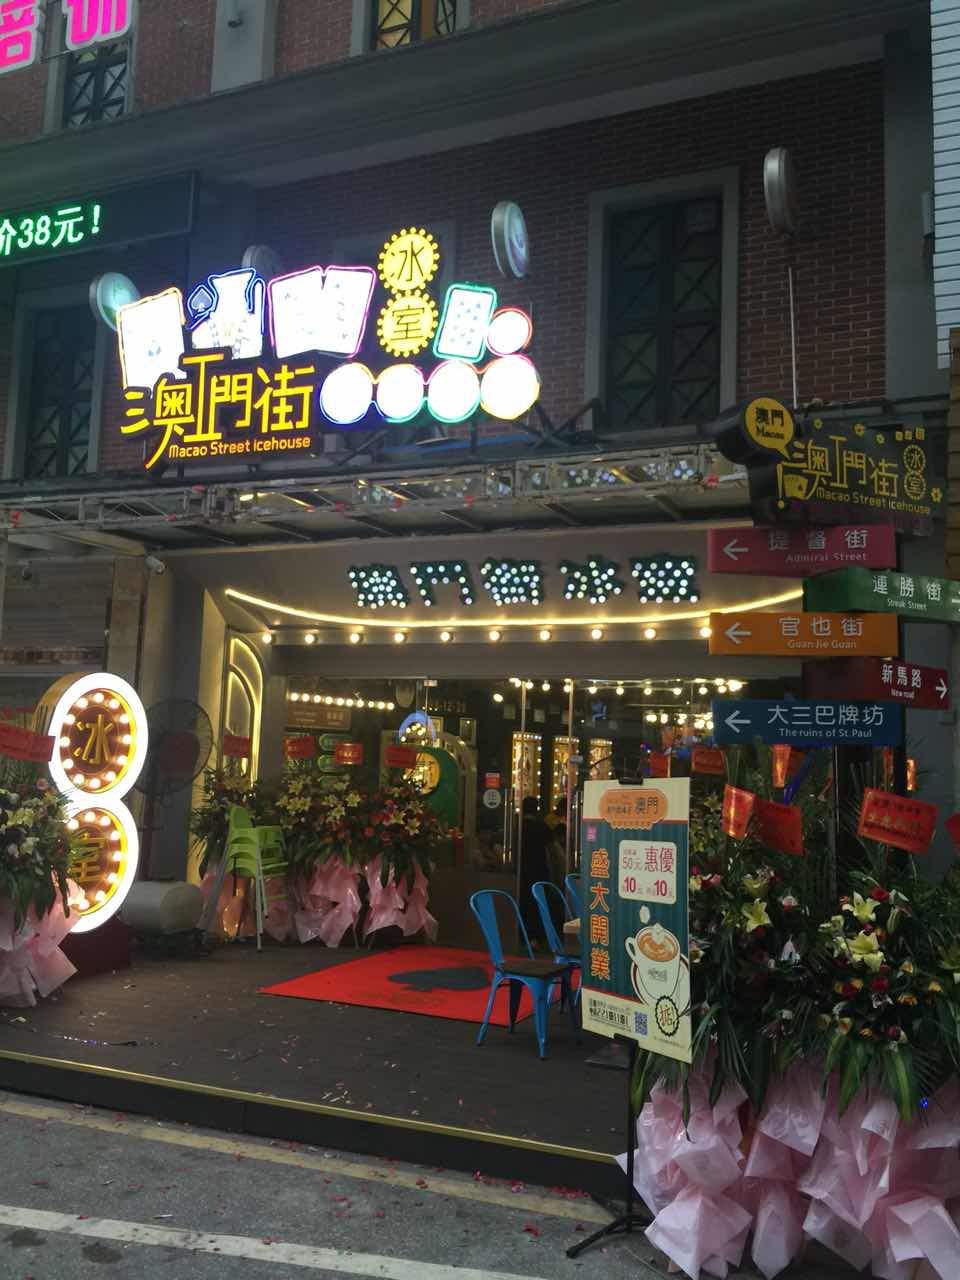 _广州市澳门街饮食有限公司_澳门购物一条街在哪里